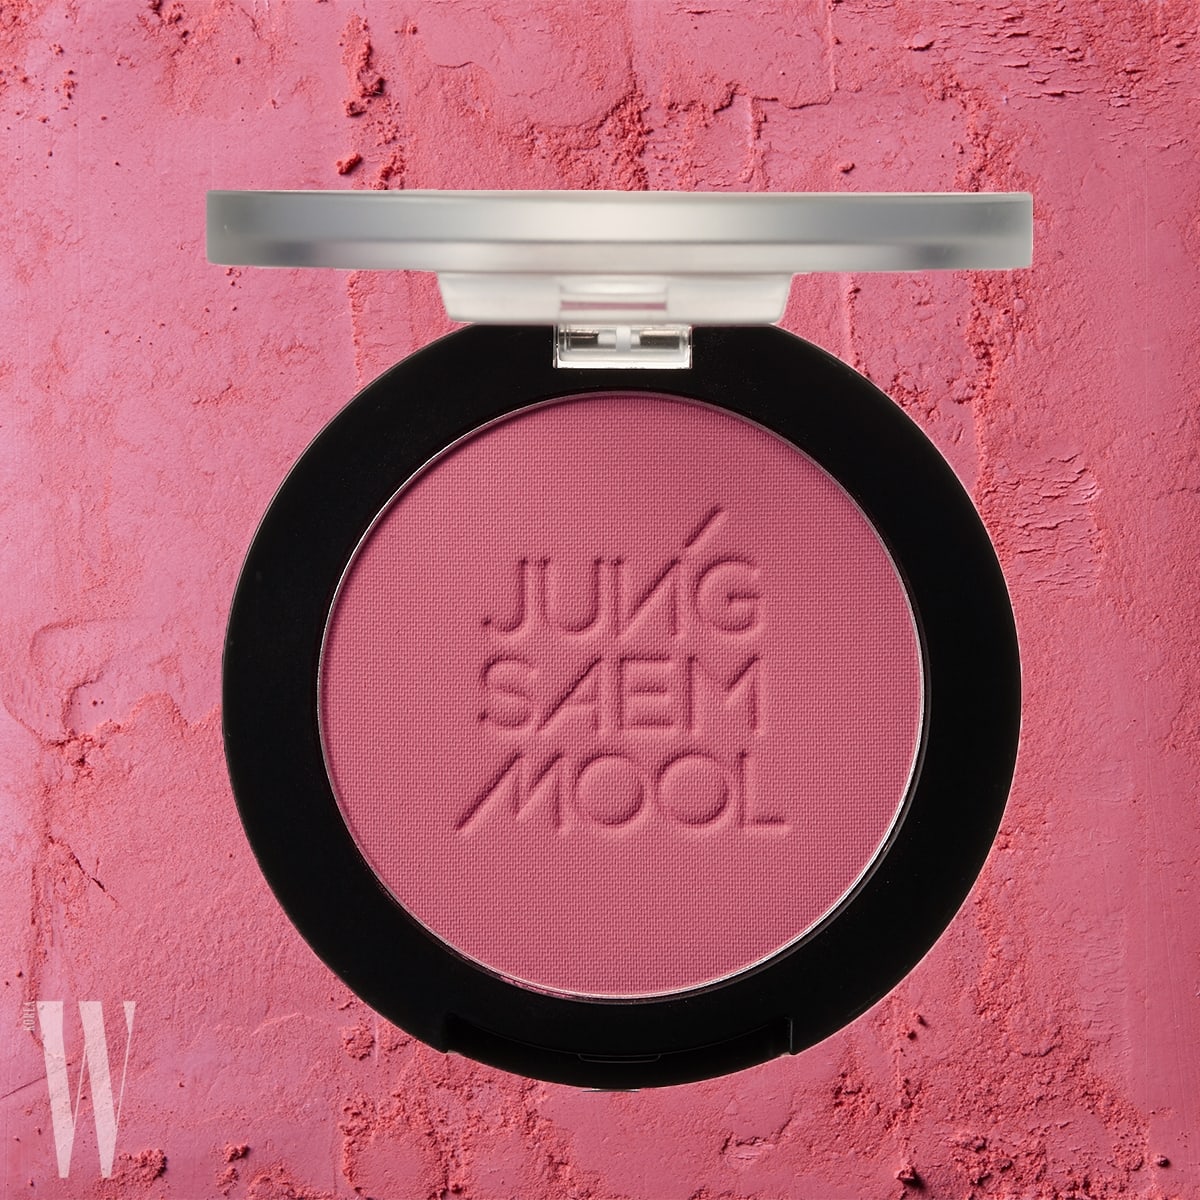 Jung Saem Mool 에센셜 치크 블러셔(루디 코랄)  과즙미 메이크업 필수품. 피부에 색이 샤르르 스미듯 가볍게 밀착되는 코럴 컬러 블러셔. 5.2g, 2만원.